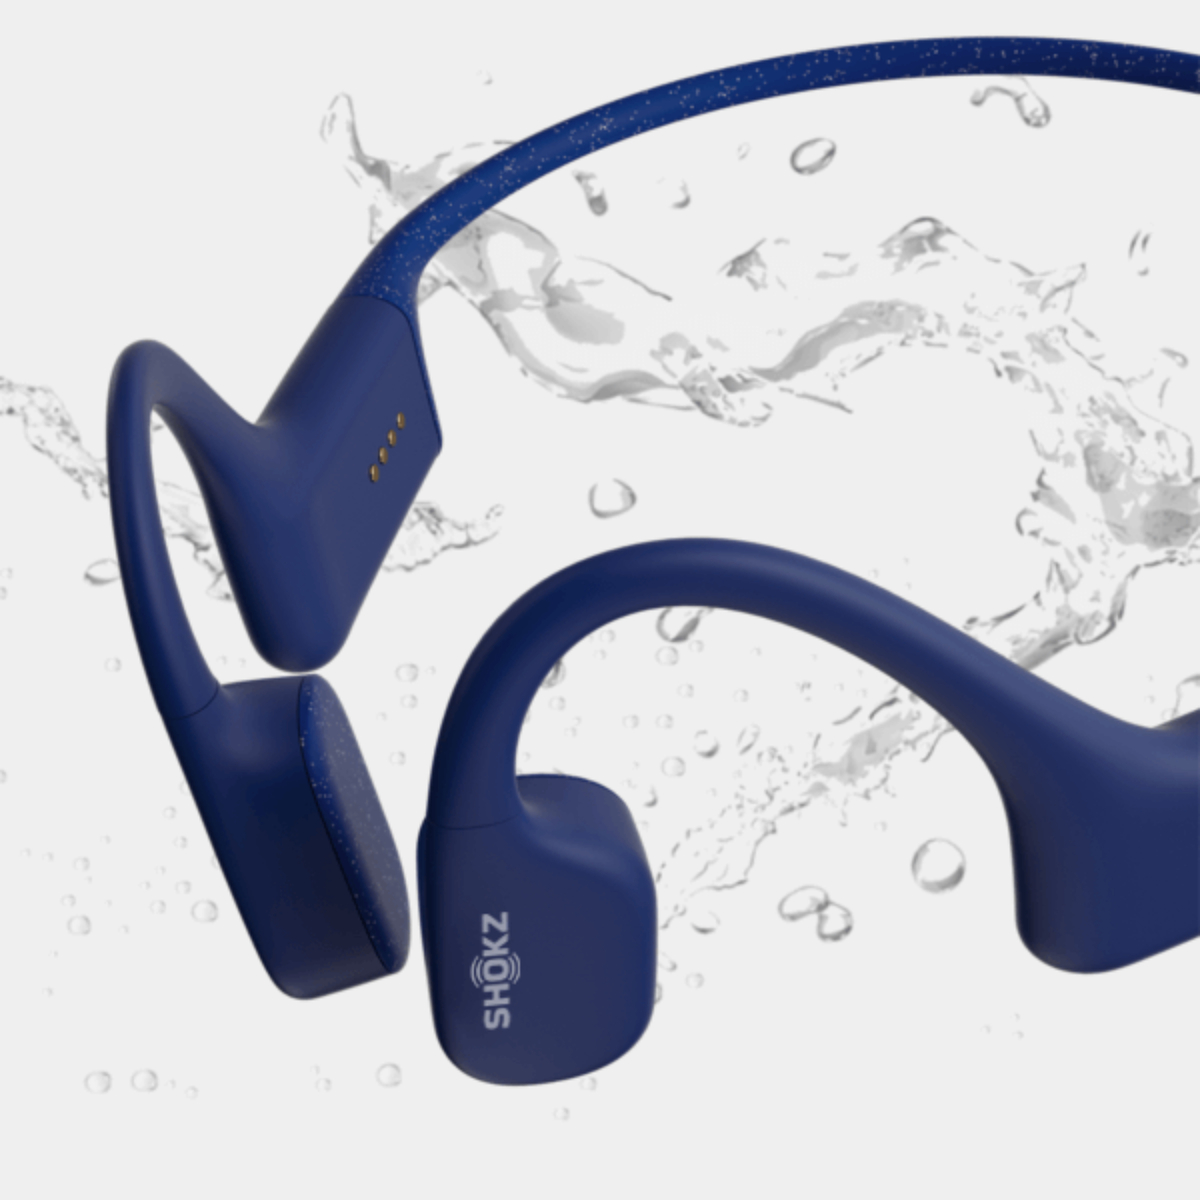 شوكز أوبن سويم بون كوندكشن سماعات رأس Mp3 للسباحة بتصميم أذن مفتوحة، أزرق، OPENSWIM BLU